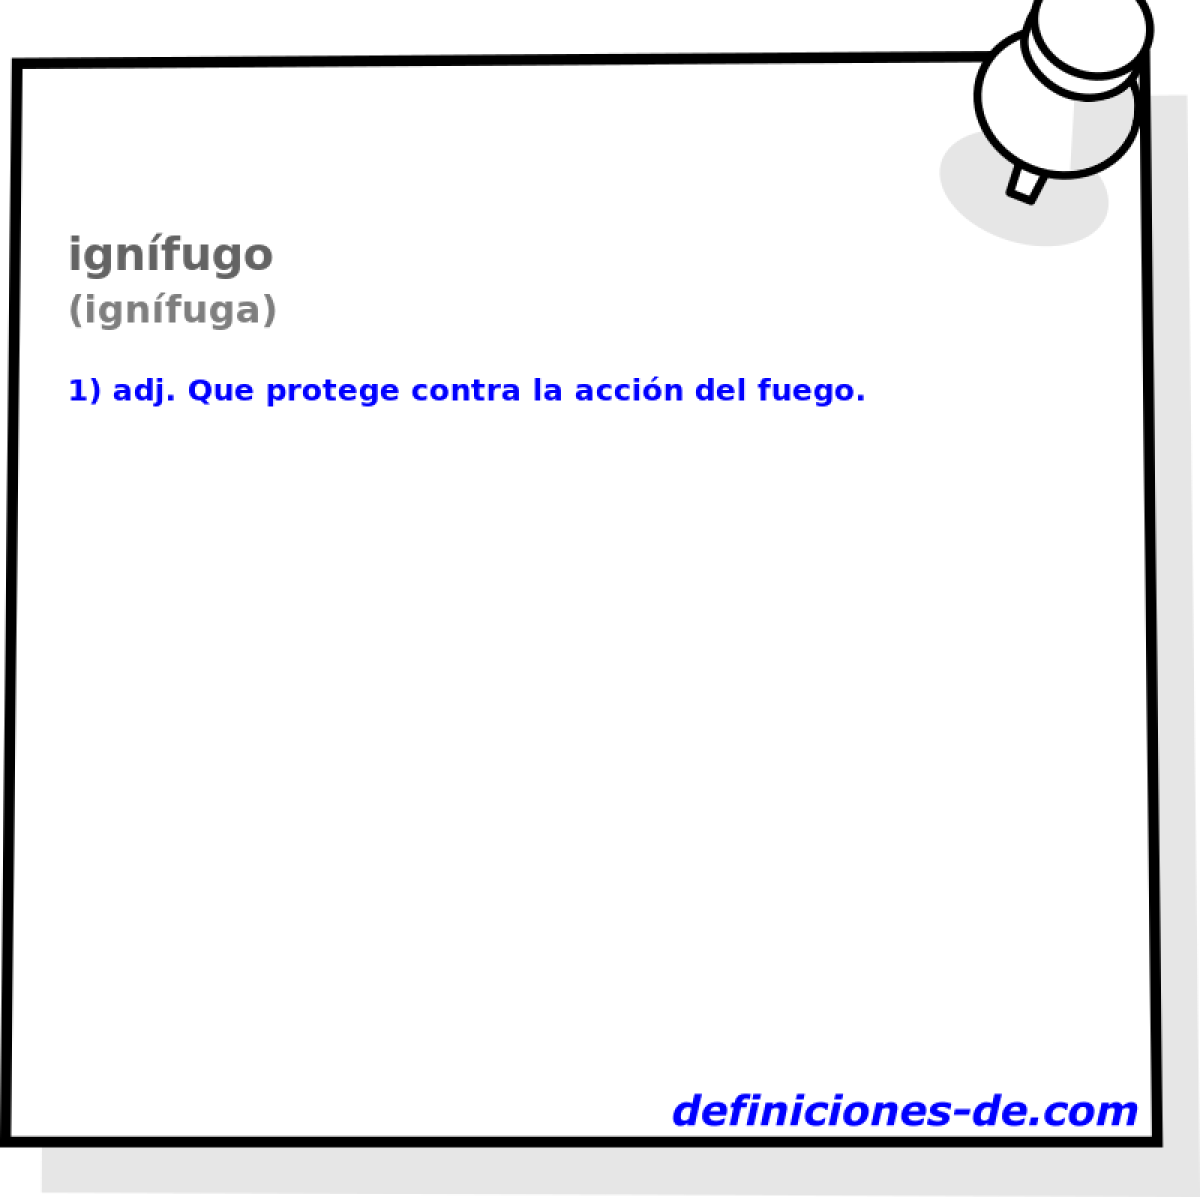 ignfugo (ignfuga)